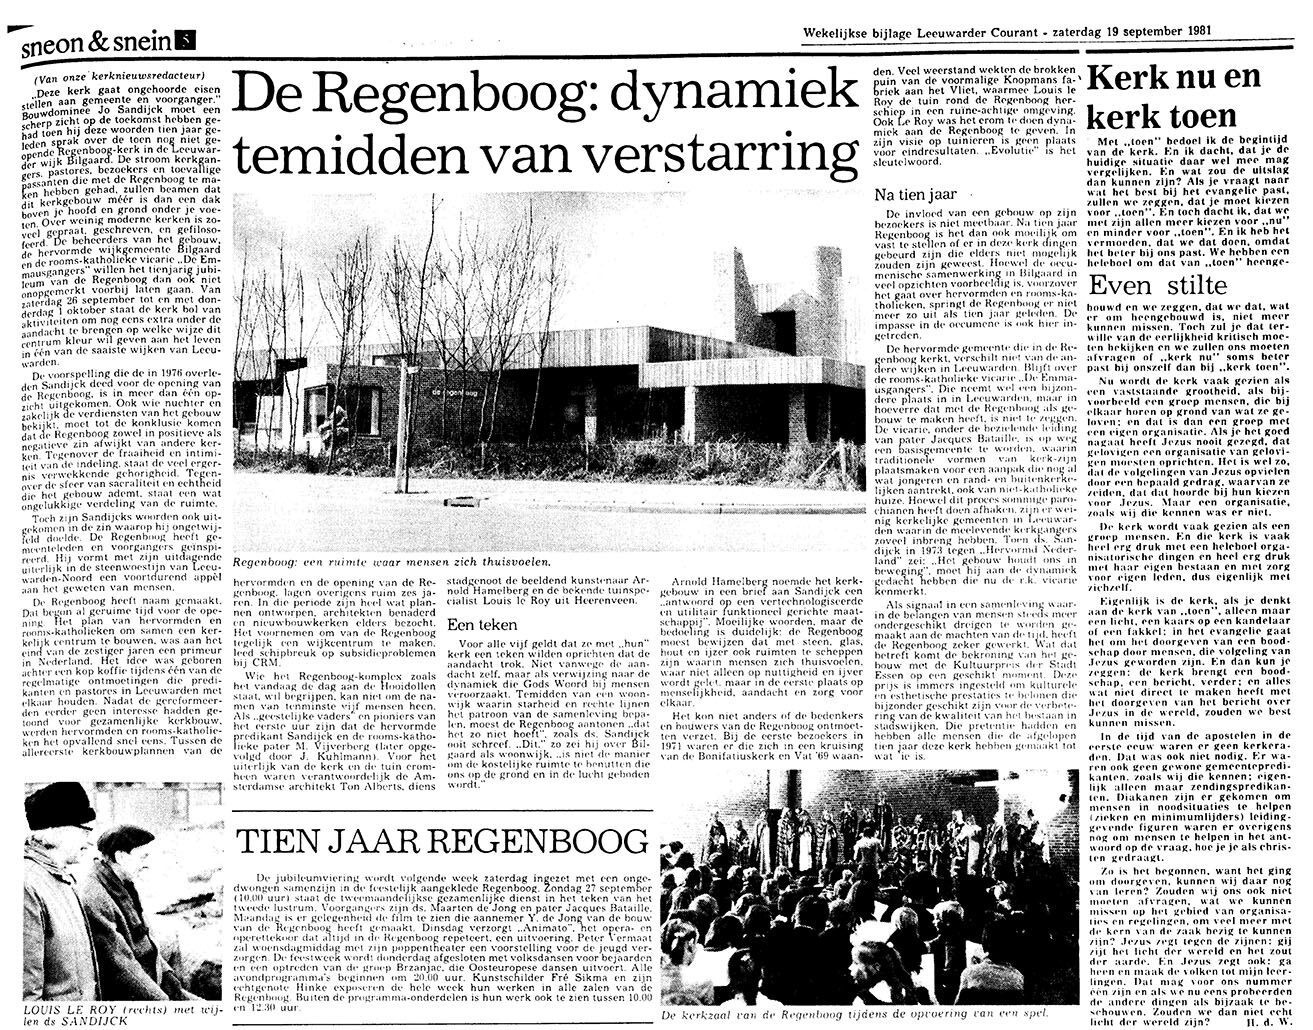 19-09-1981; ed. Dag bezitskenmerk KBDK